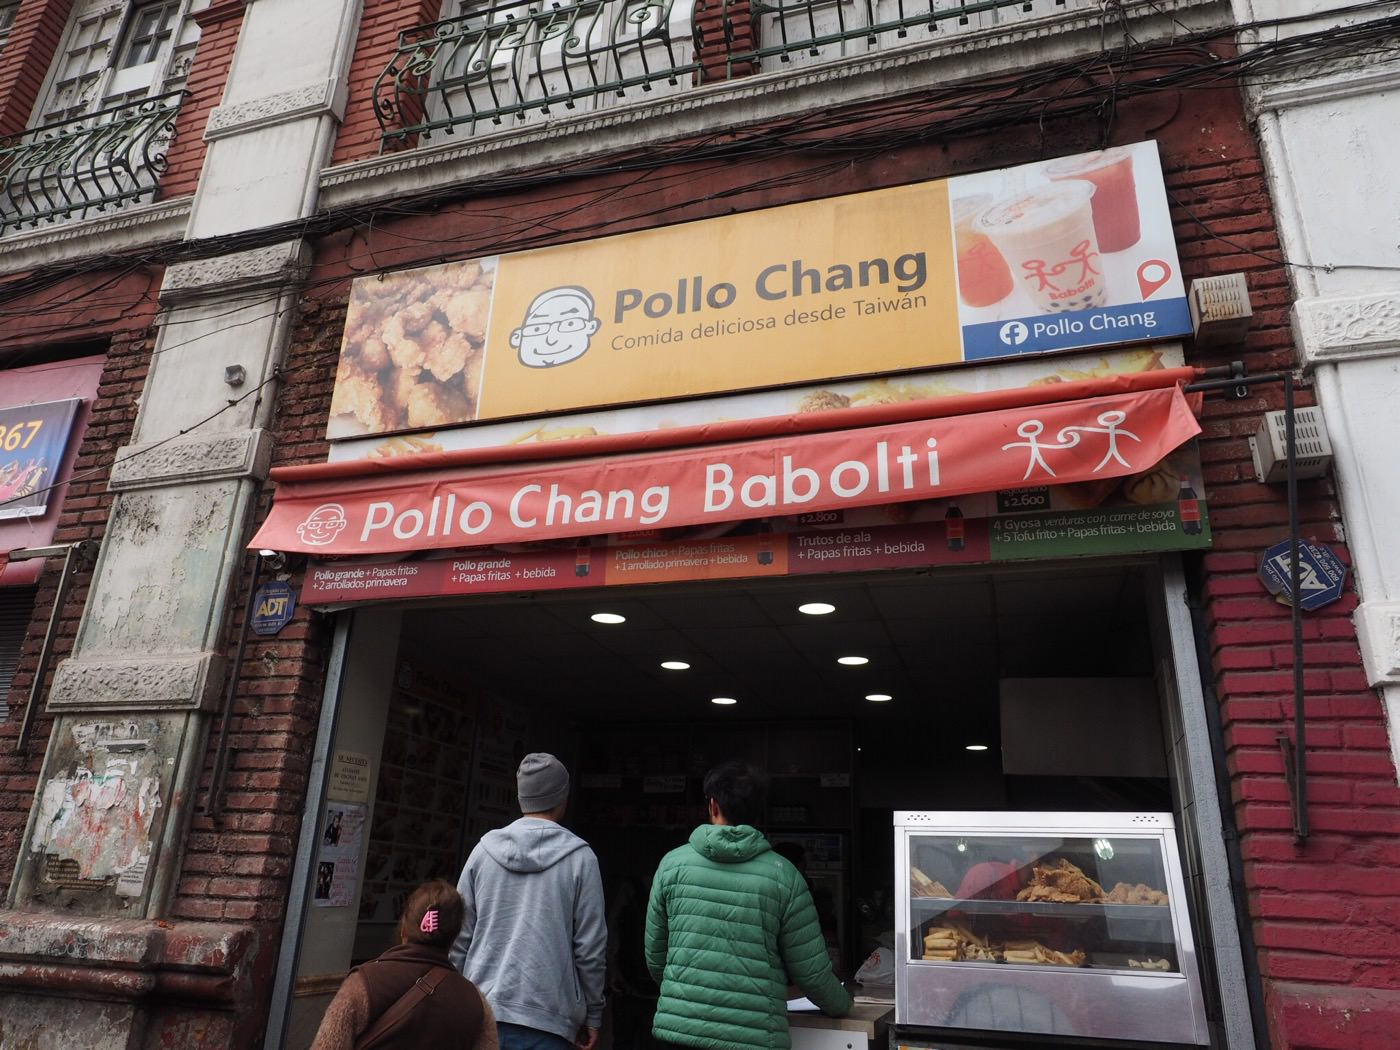 聖地牙哥美食 雞排珍奶 必須朝聖的台灣味 芭樂哥的 Pollo Chang 雞排連鎖店 - 一口冒險 Bitesized Adventure